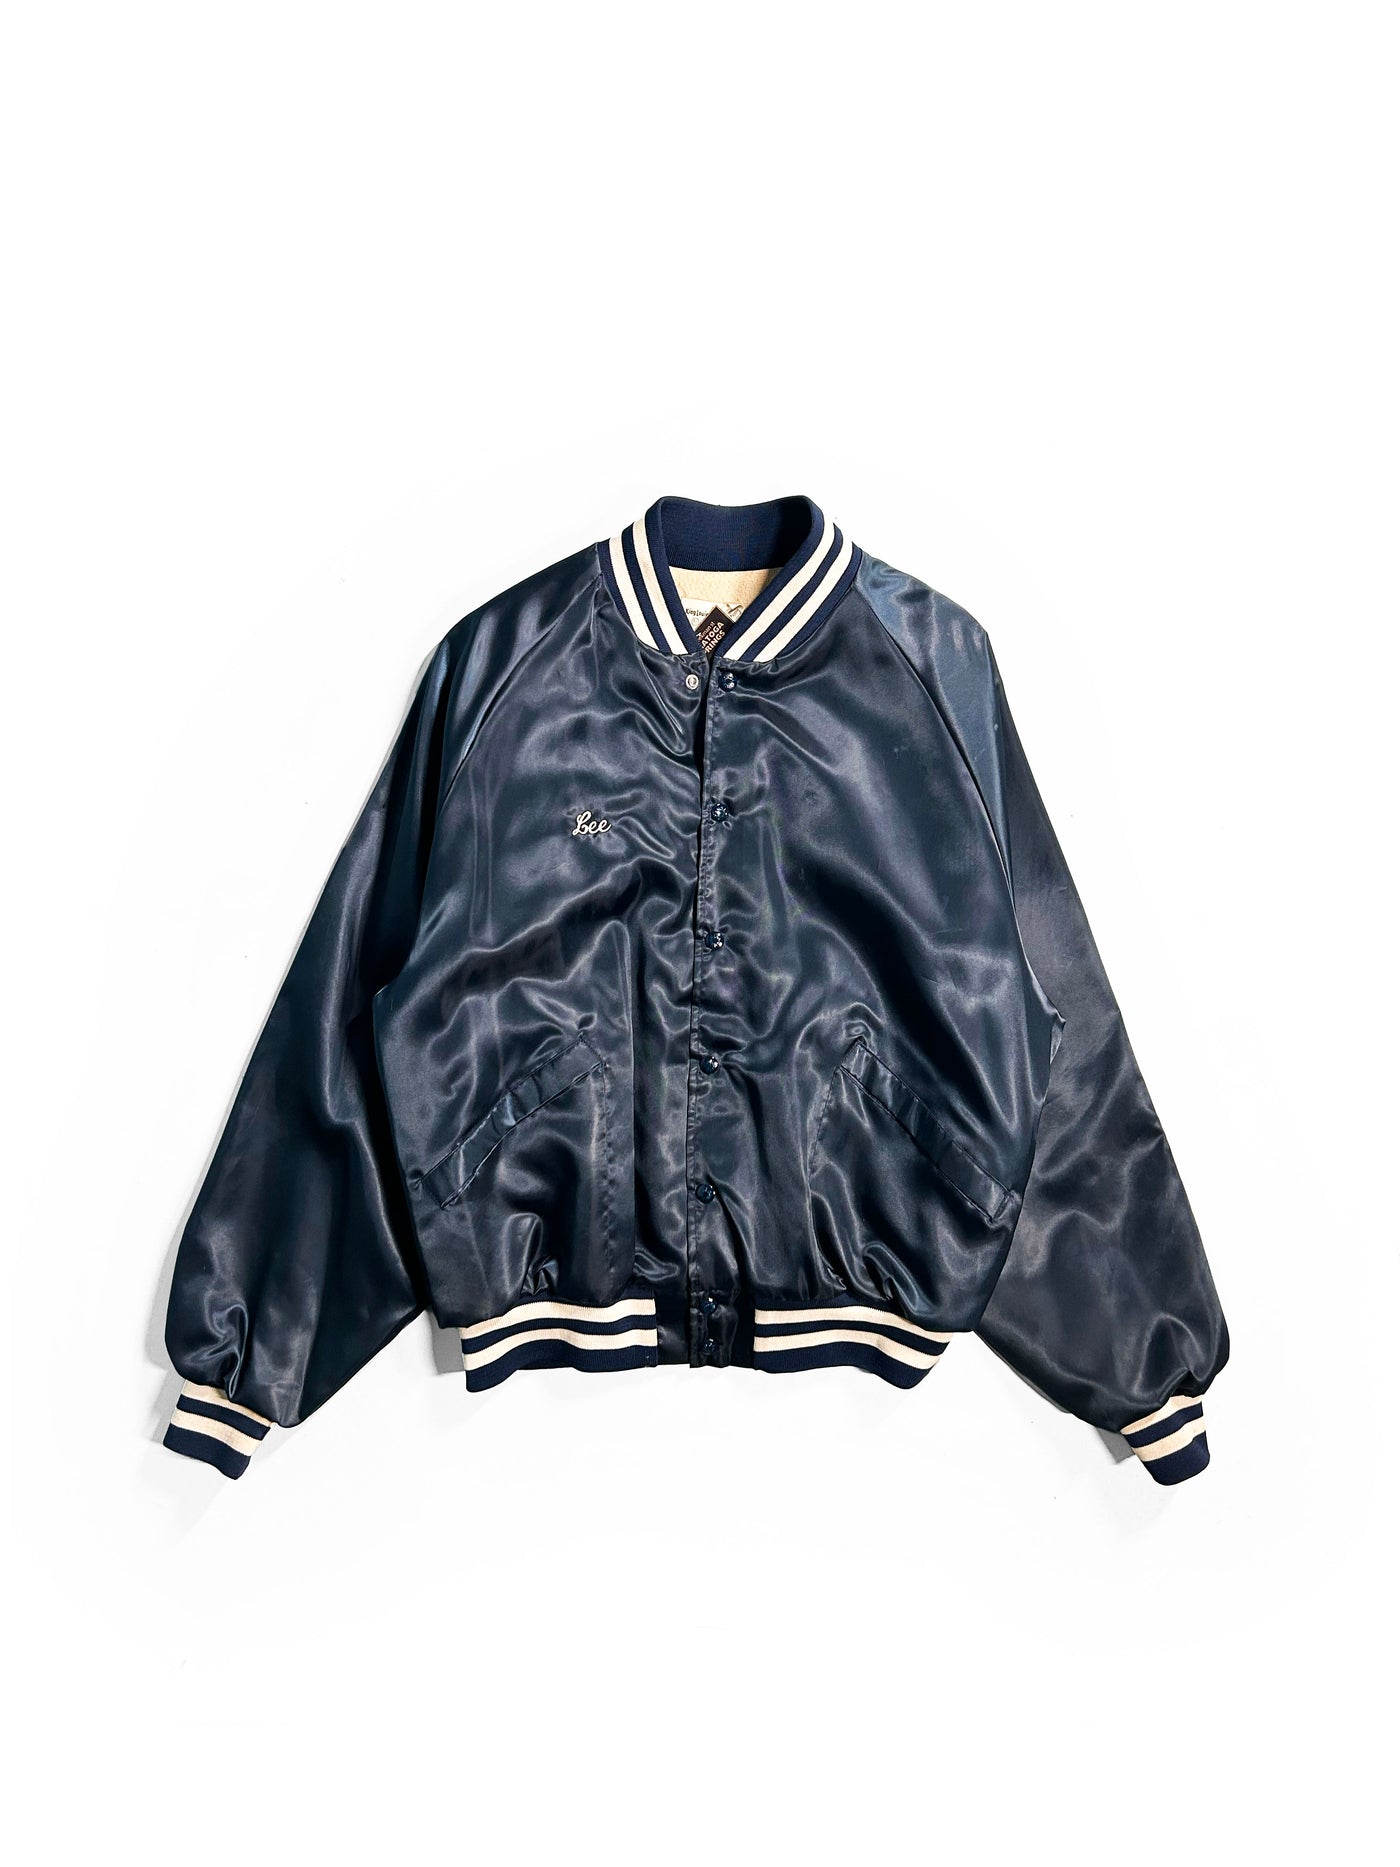 Vintage 80s ‘Lee’ Satin Bomber Jacket